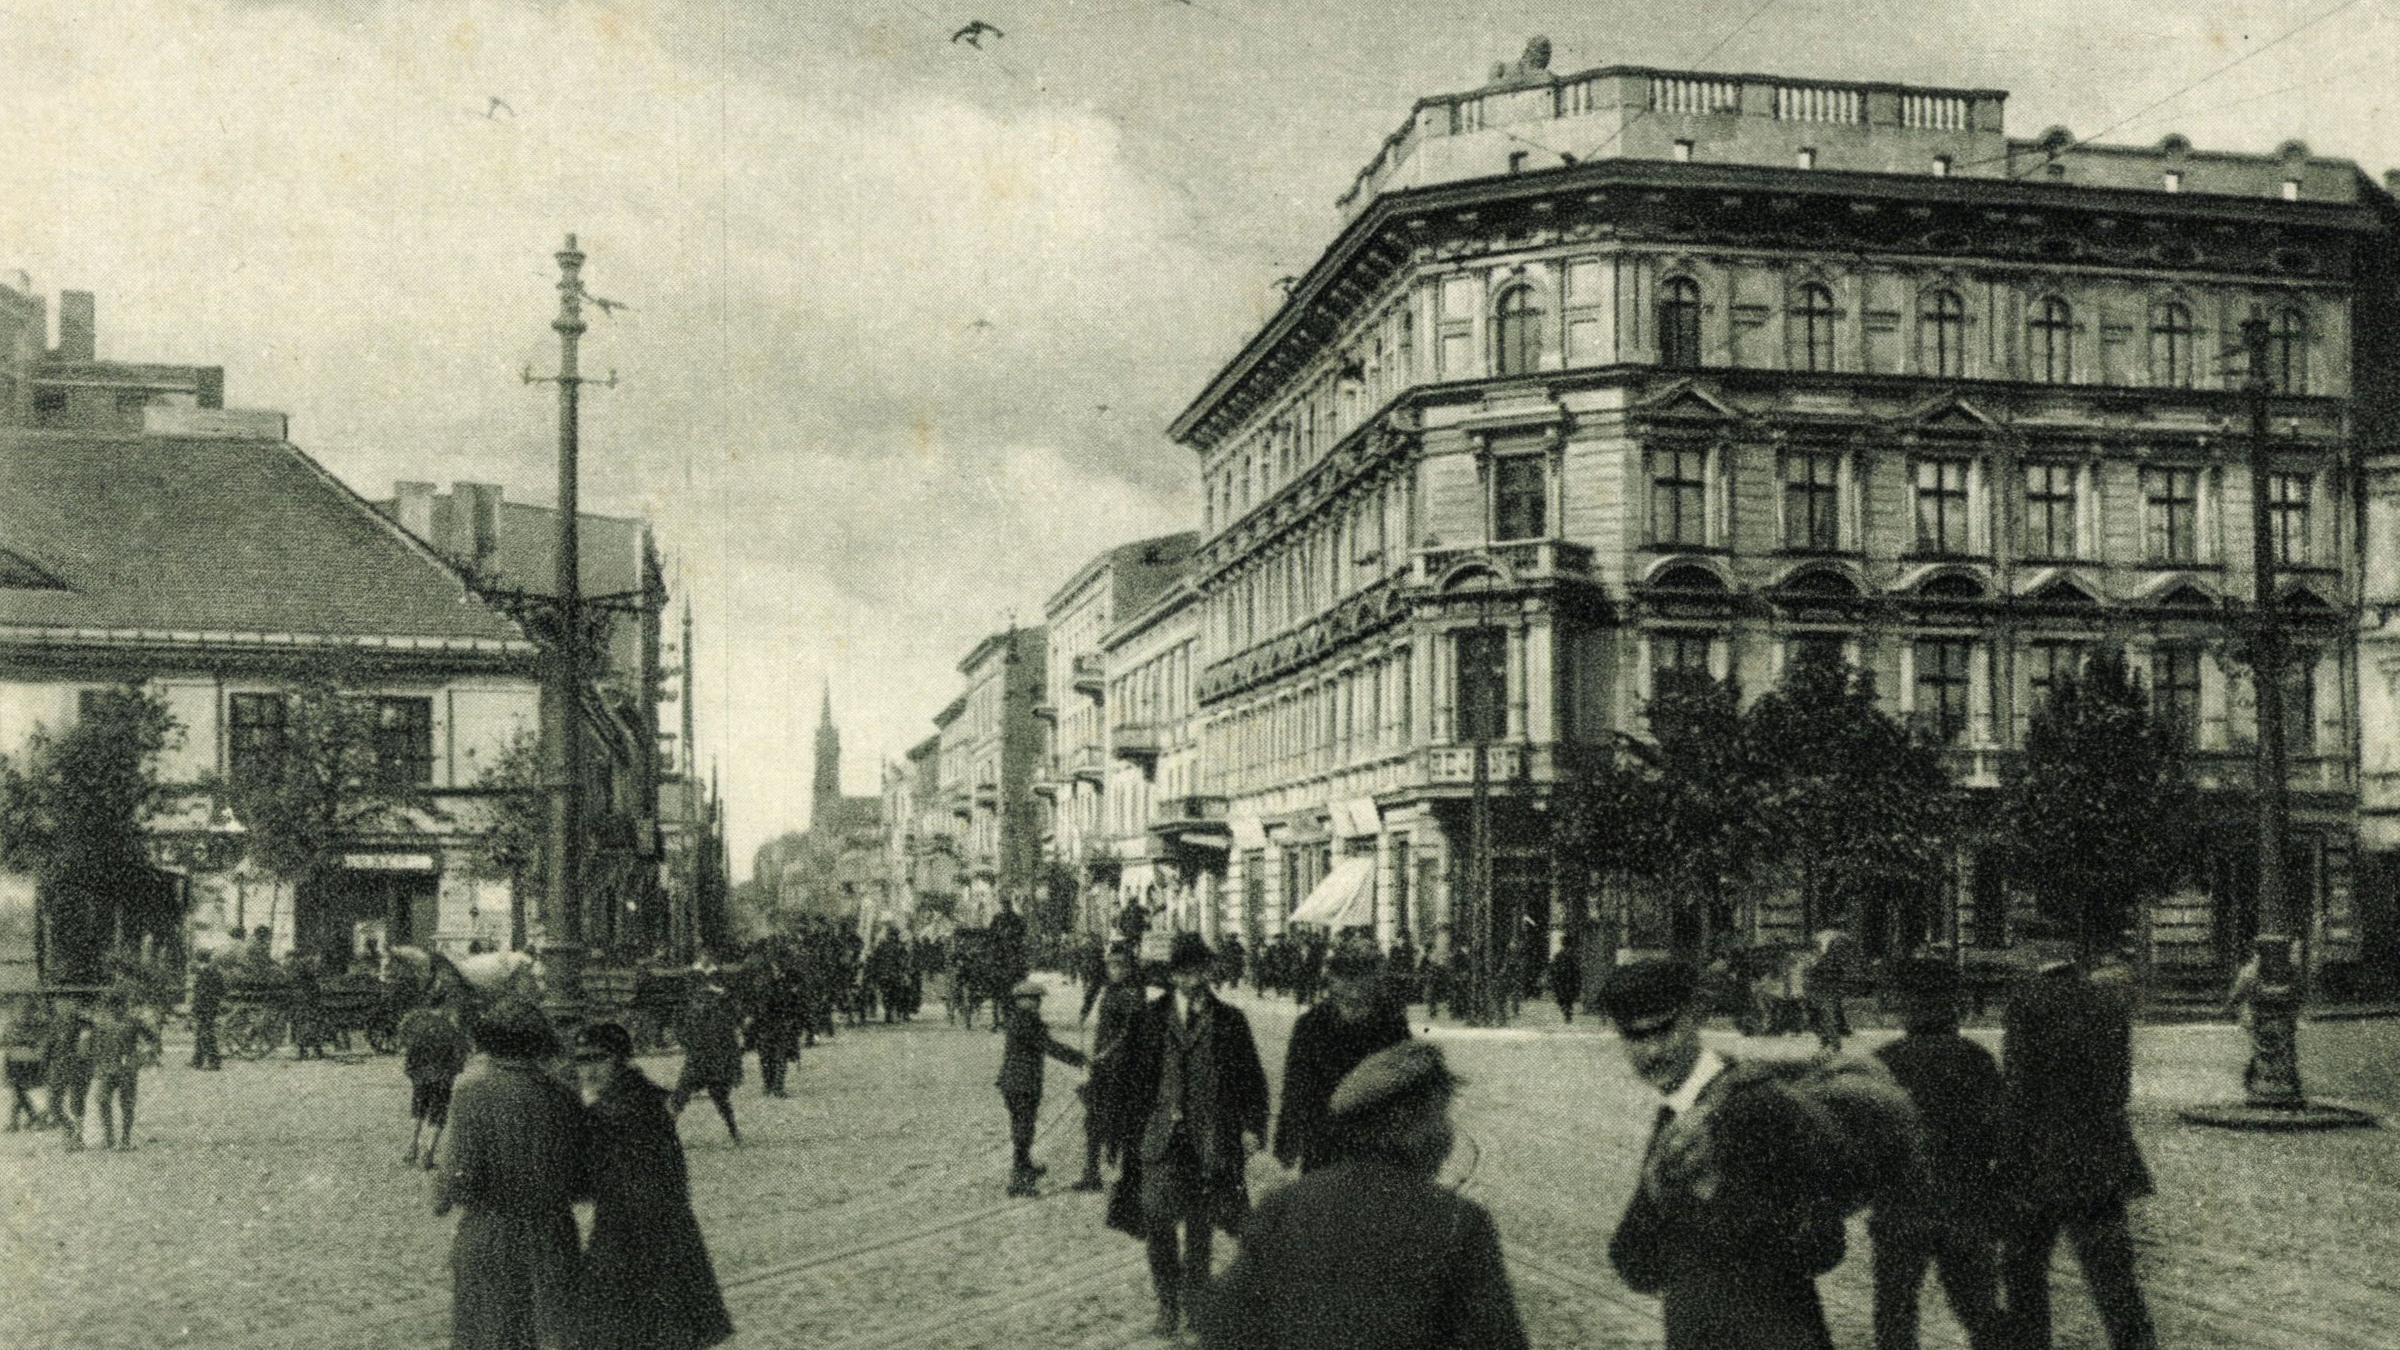 Schwarz-Weiß-Bild eines Gebäudes am Freiheitsplatz in Lodz. Auf dem Pla...</p>

                        <a href=